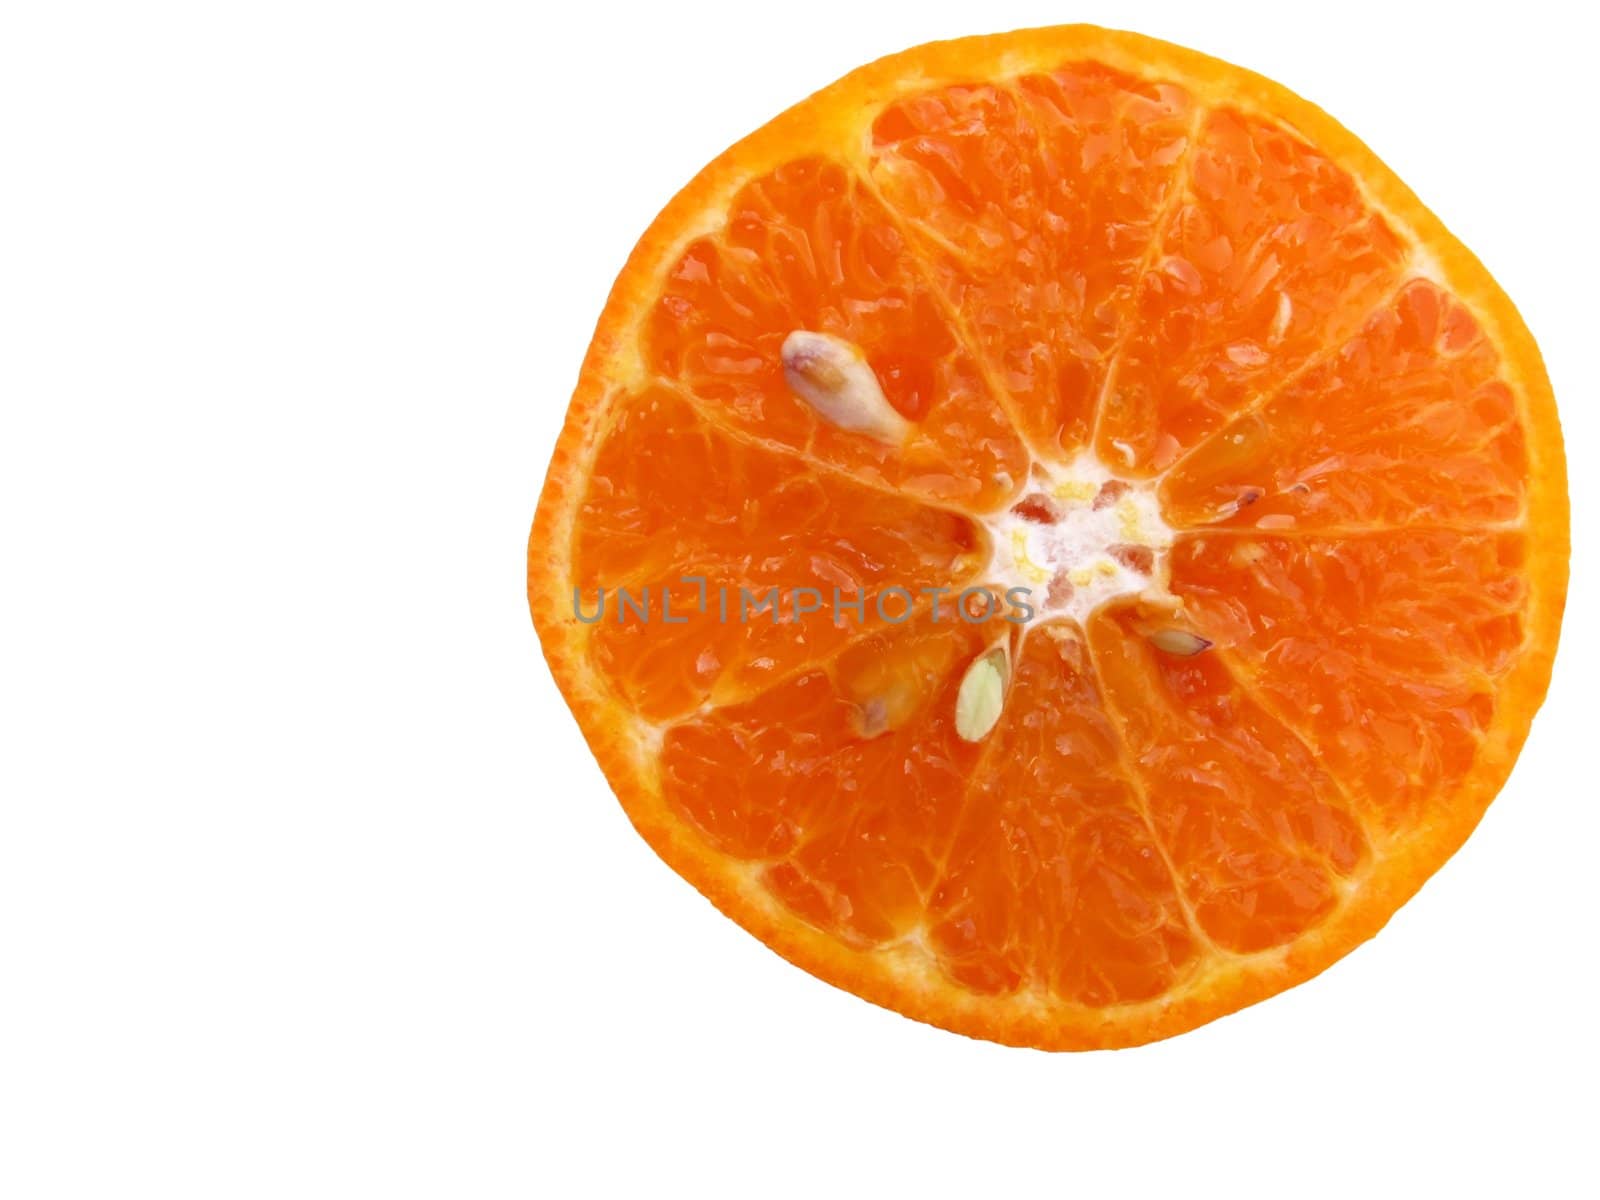 Image of half sliced juicy orange isolated on white background